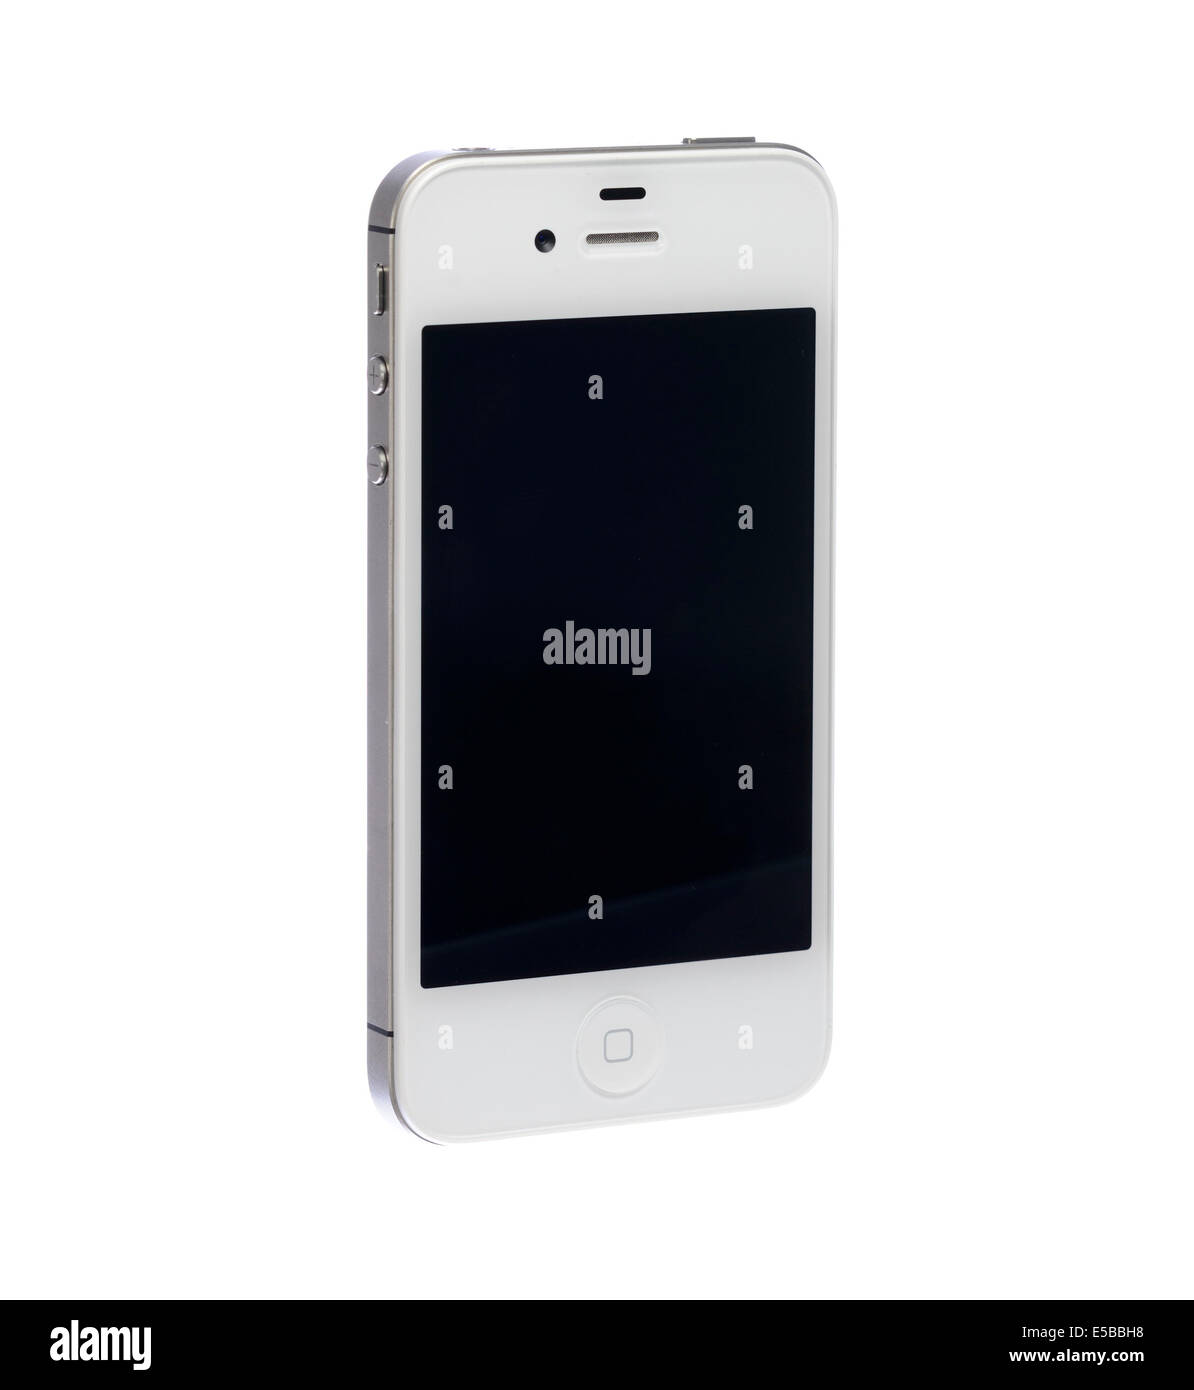 Weisse Apple Iphone 4 S Ausschneiden Stockfotografie Alamy